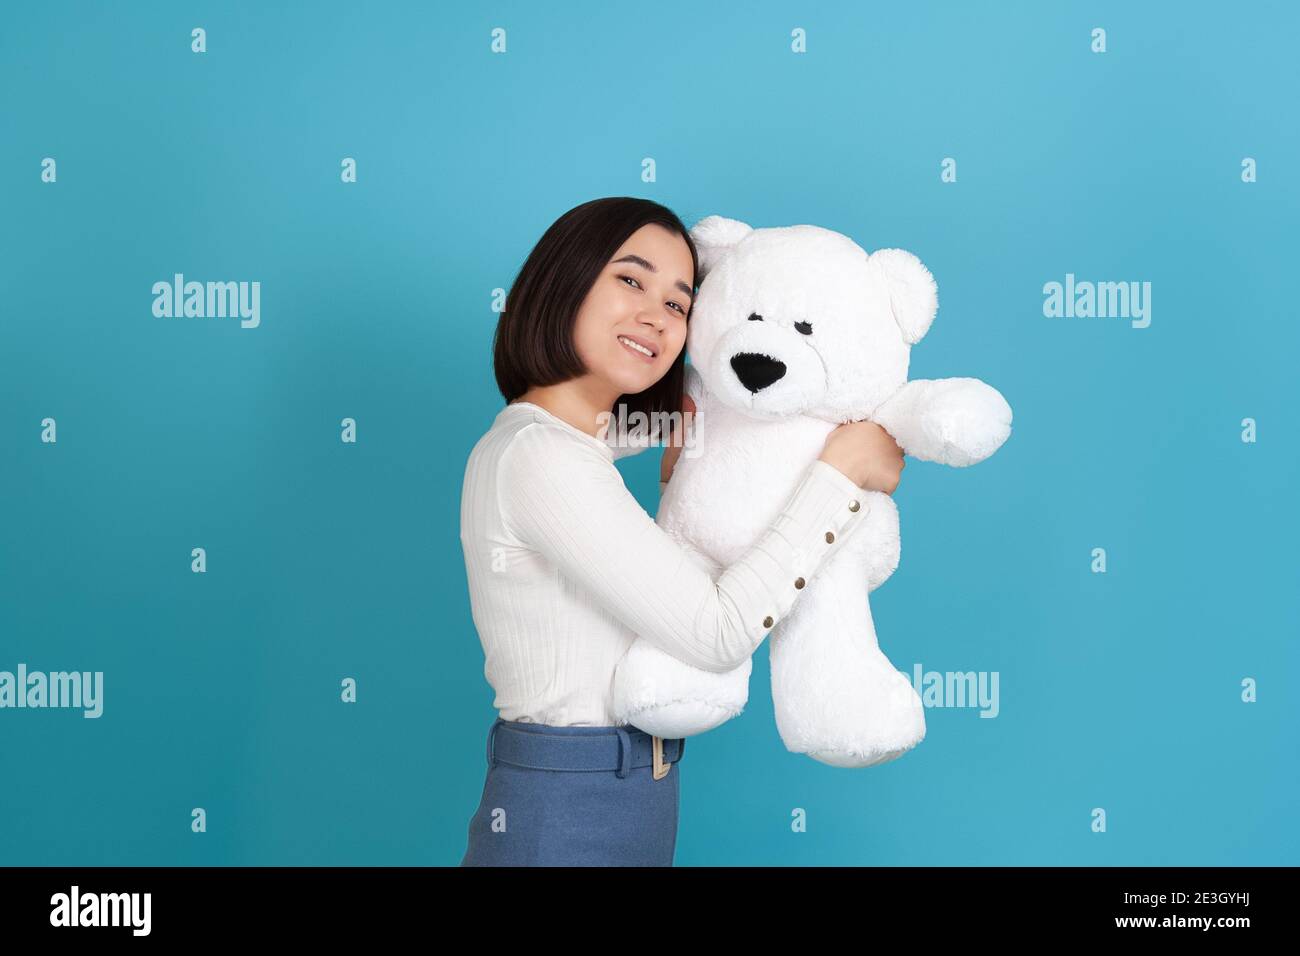 una donna asiatica molto gioiosa e gentile si alza lateralmente e si snuggisce fino ad un grande orsacchiotto bianco isolato su uno sfondo blu Foto Stock